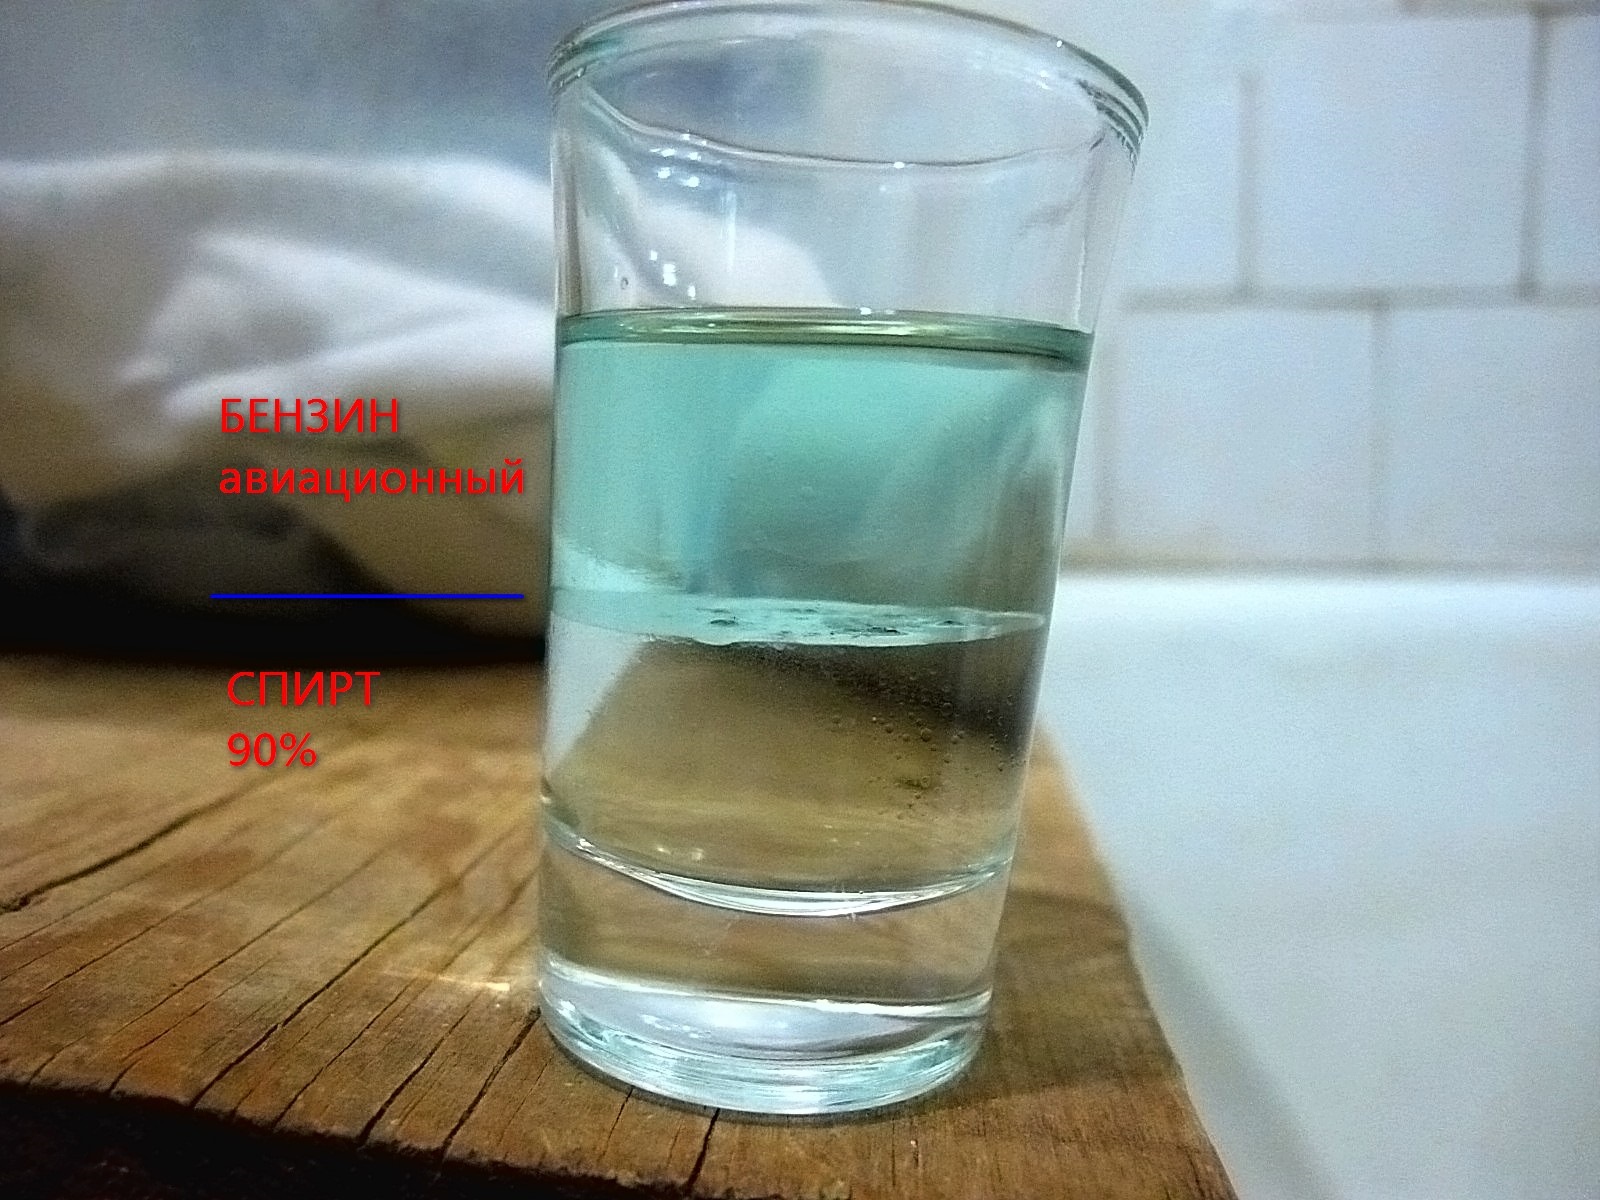 Воду и керосин налили в стакан. Бензин в воде. Бензин в стакане. Смесь воды и топлива. Керосин растворяется в воде.